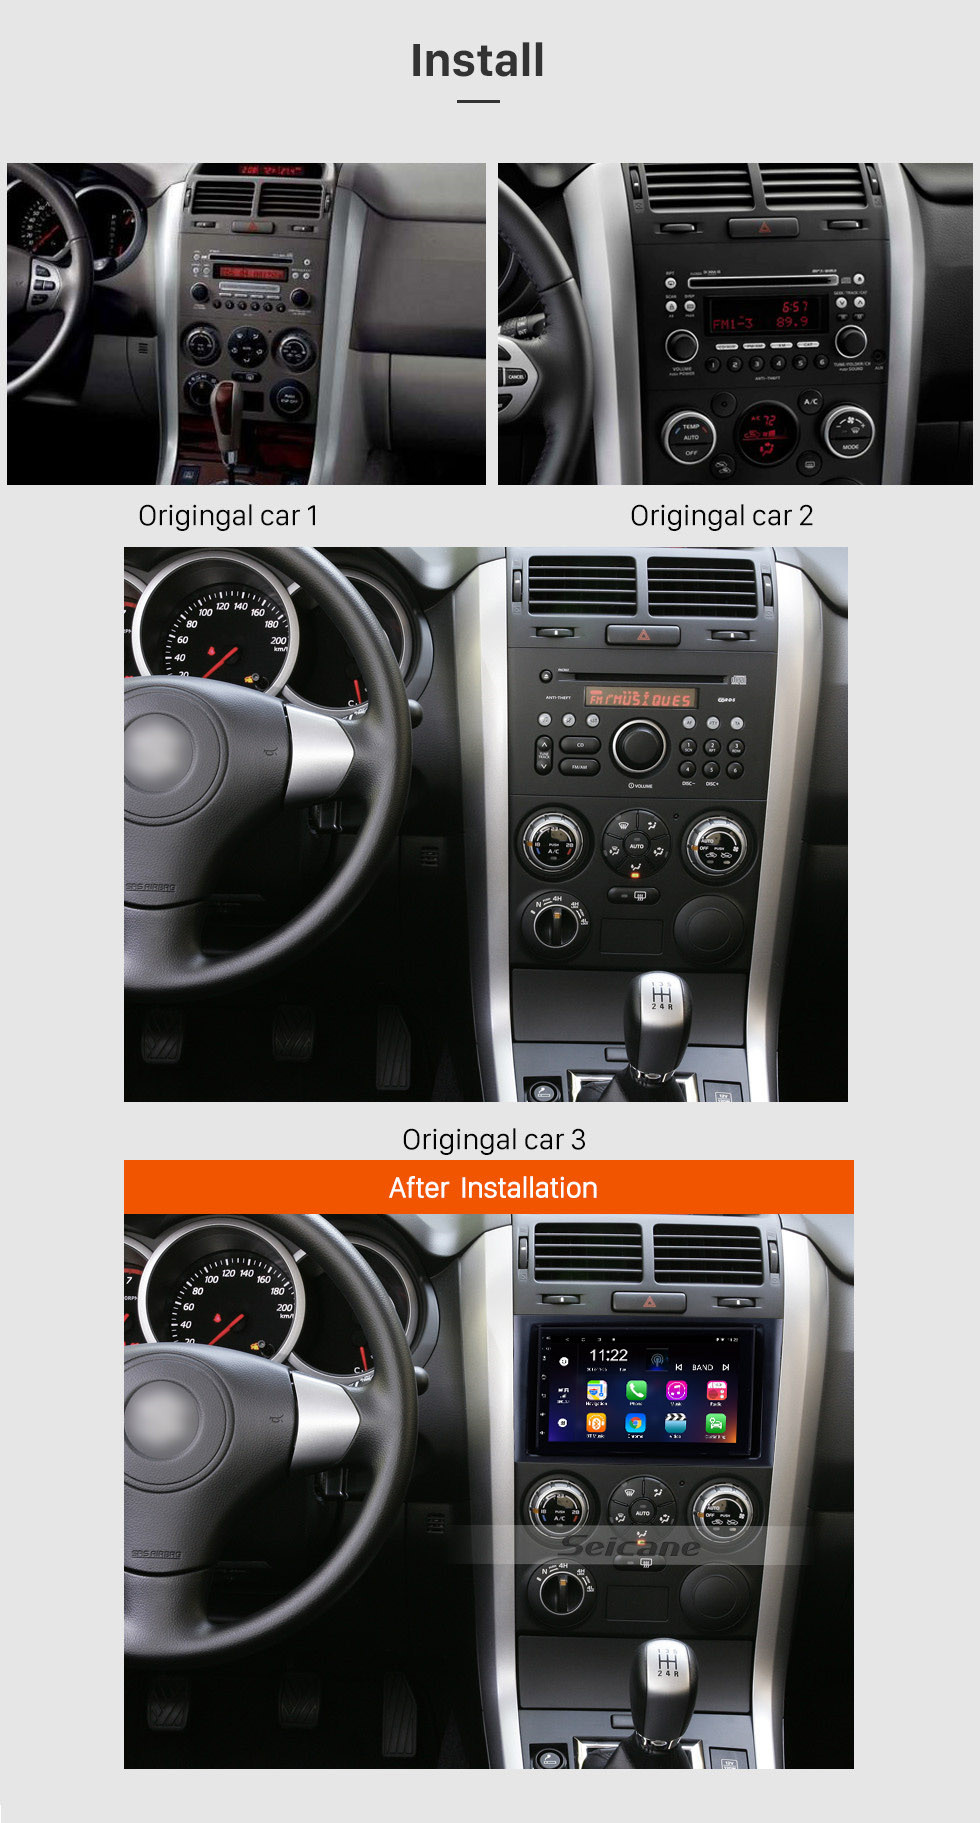 Seicane 7 pouces Aftermarket Android 10.0 Système de navigation GPS à écran tactile pour 2005-2015 SUZUKI GRAND VITARA Support Radio Bluetooth TPMS DVR OBD II Caméra arrière AUX Appui-tête Contrôle du moniteur USB HD 1080P Vidéo 3G WiFi